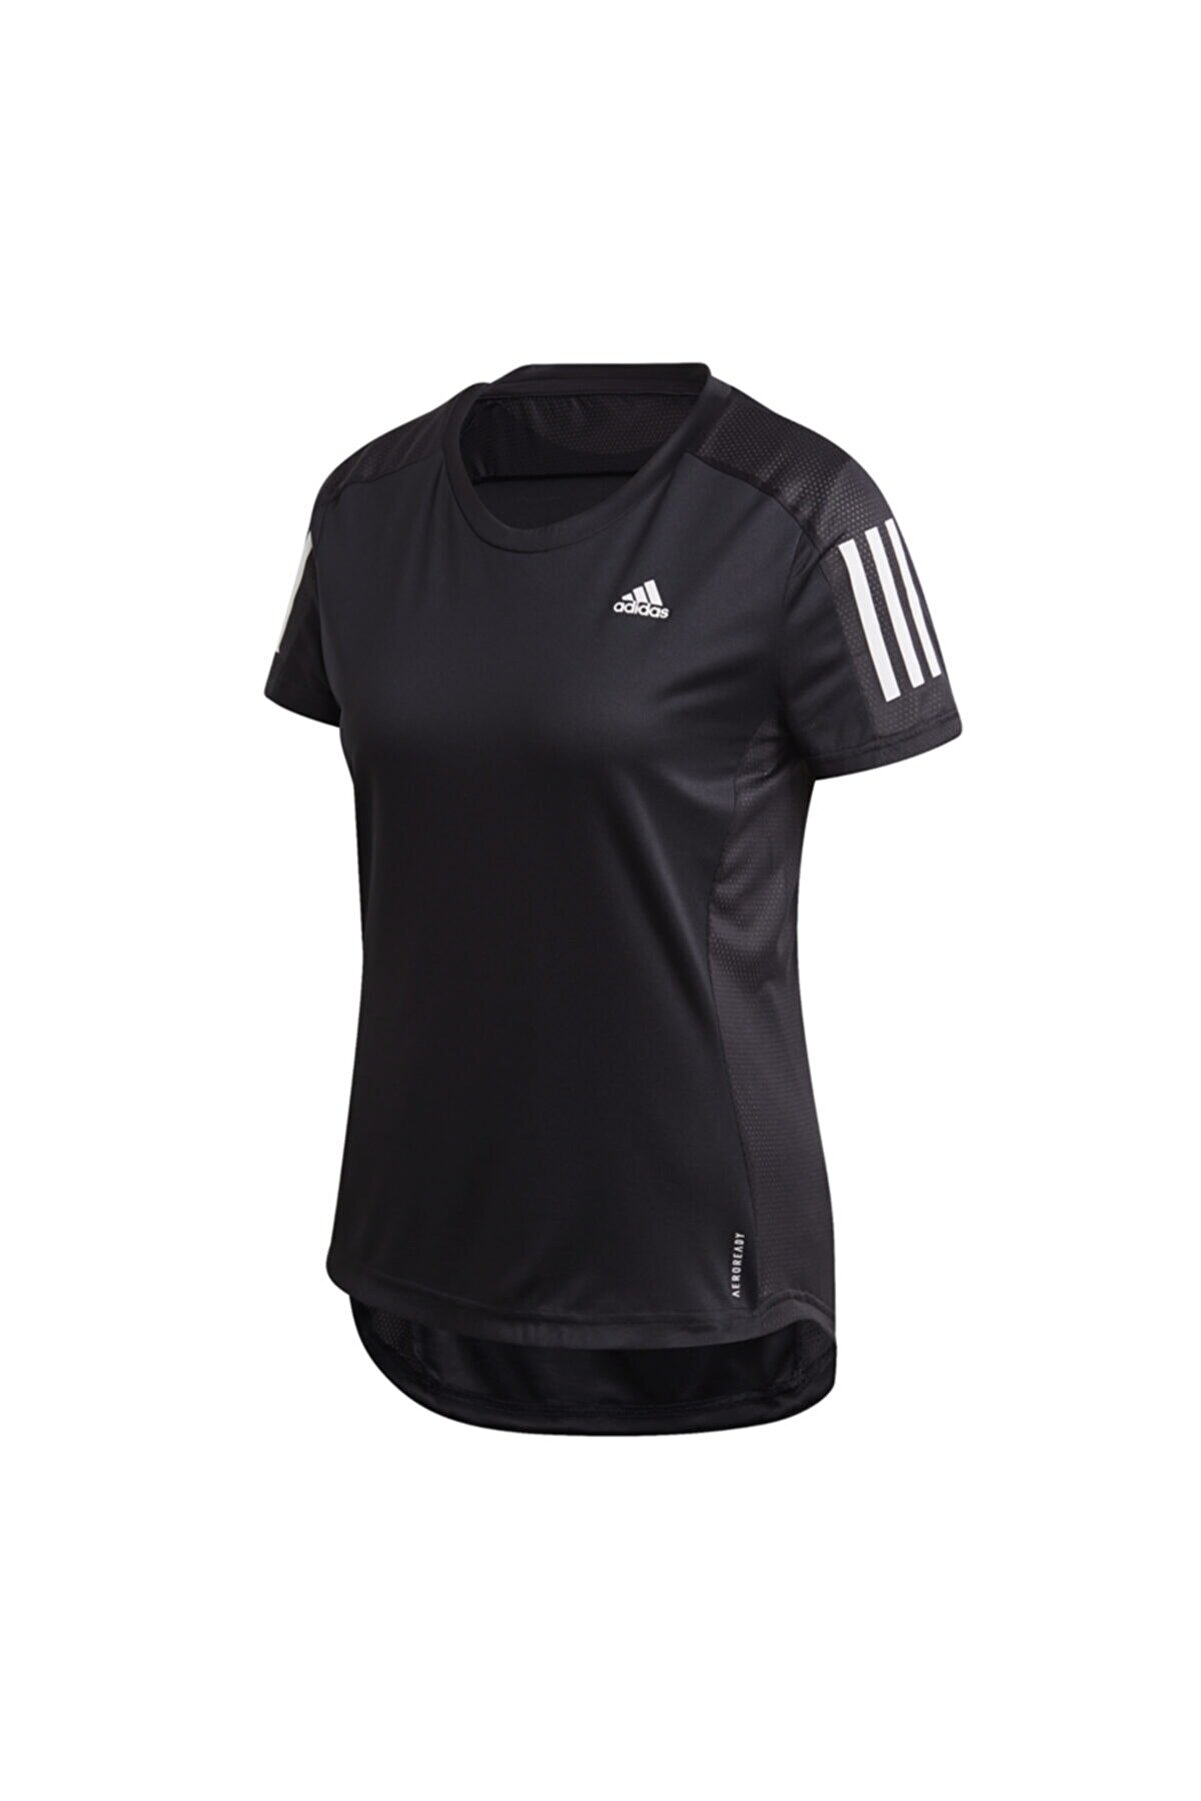 adidas Fs9830-k Own The Run Tee Kadın T-shirt Siyah